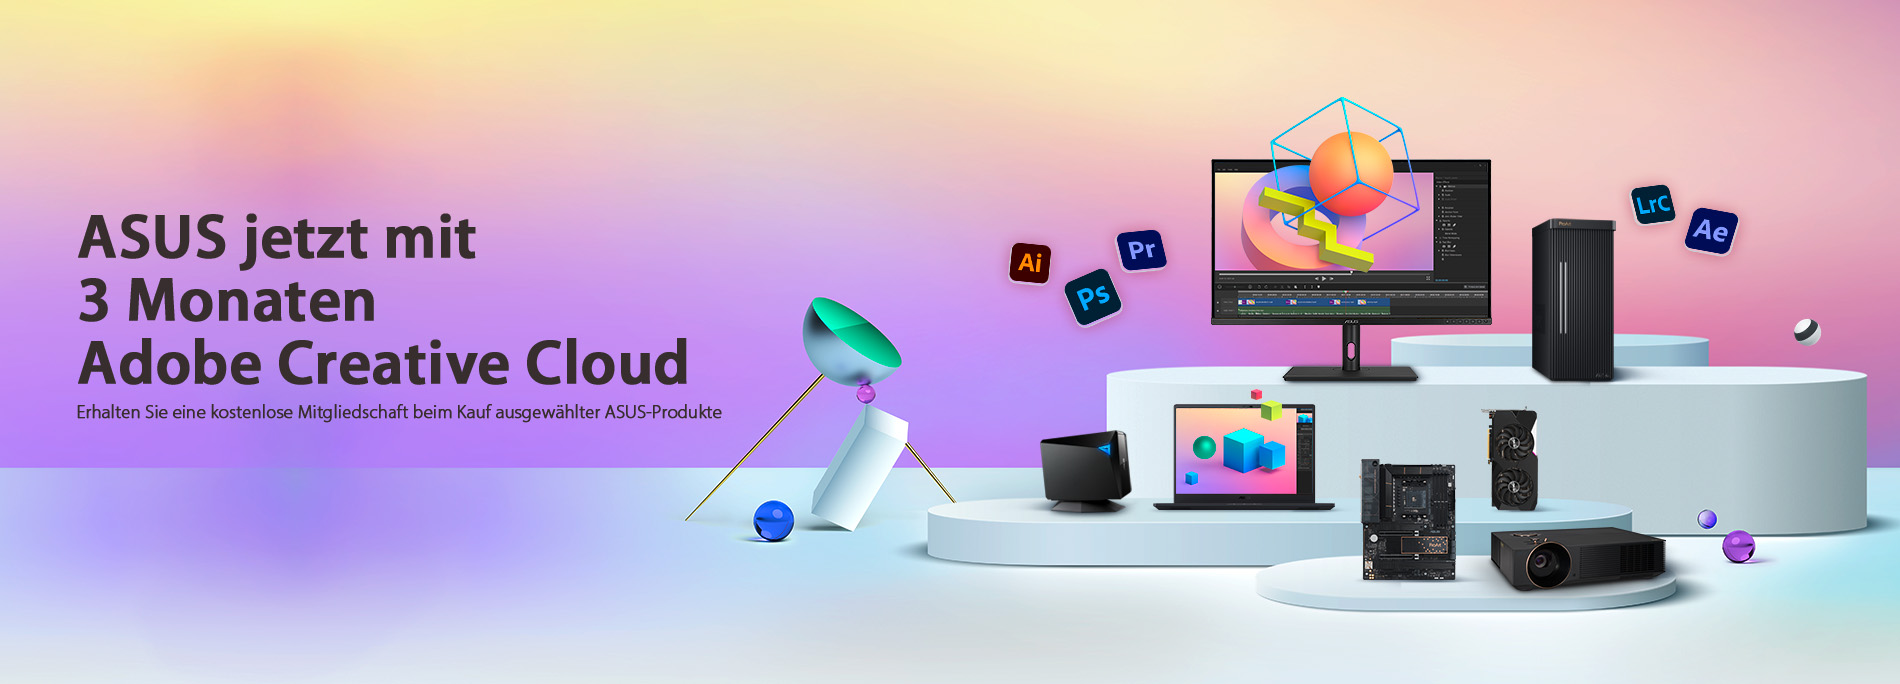 Jetzt 3 Monate Adobe Creative Cloud sichern mit ASUS (im Wert von $238.47)